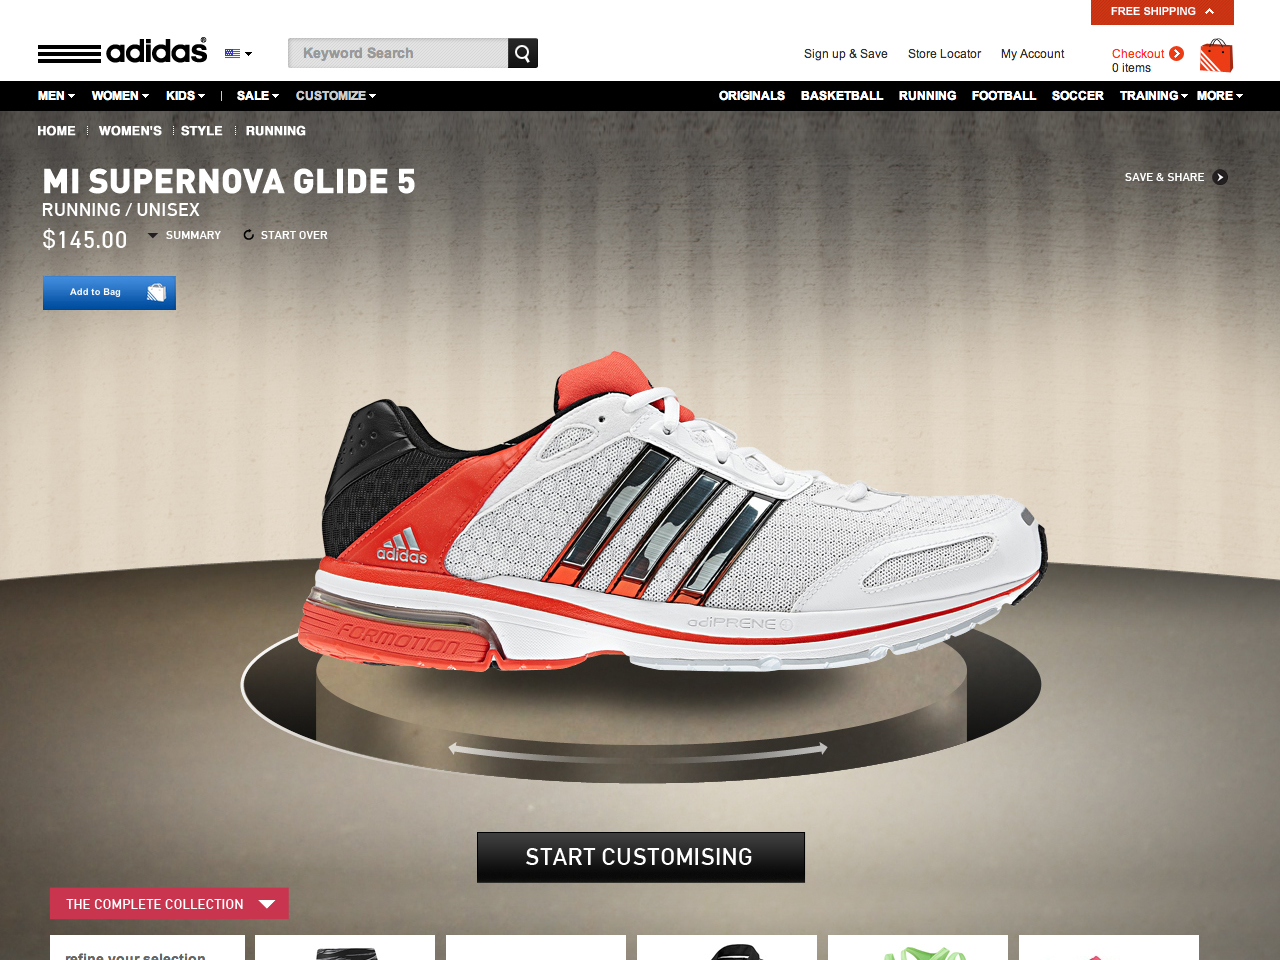 adidas_running_config_01.jpg